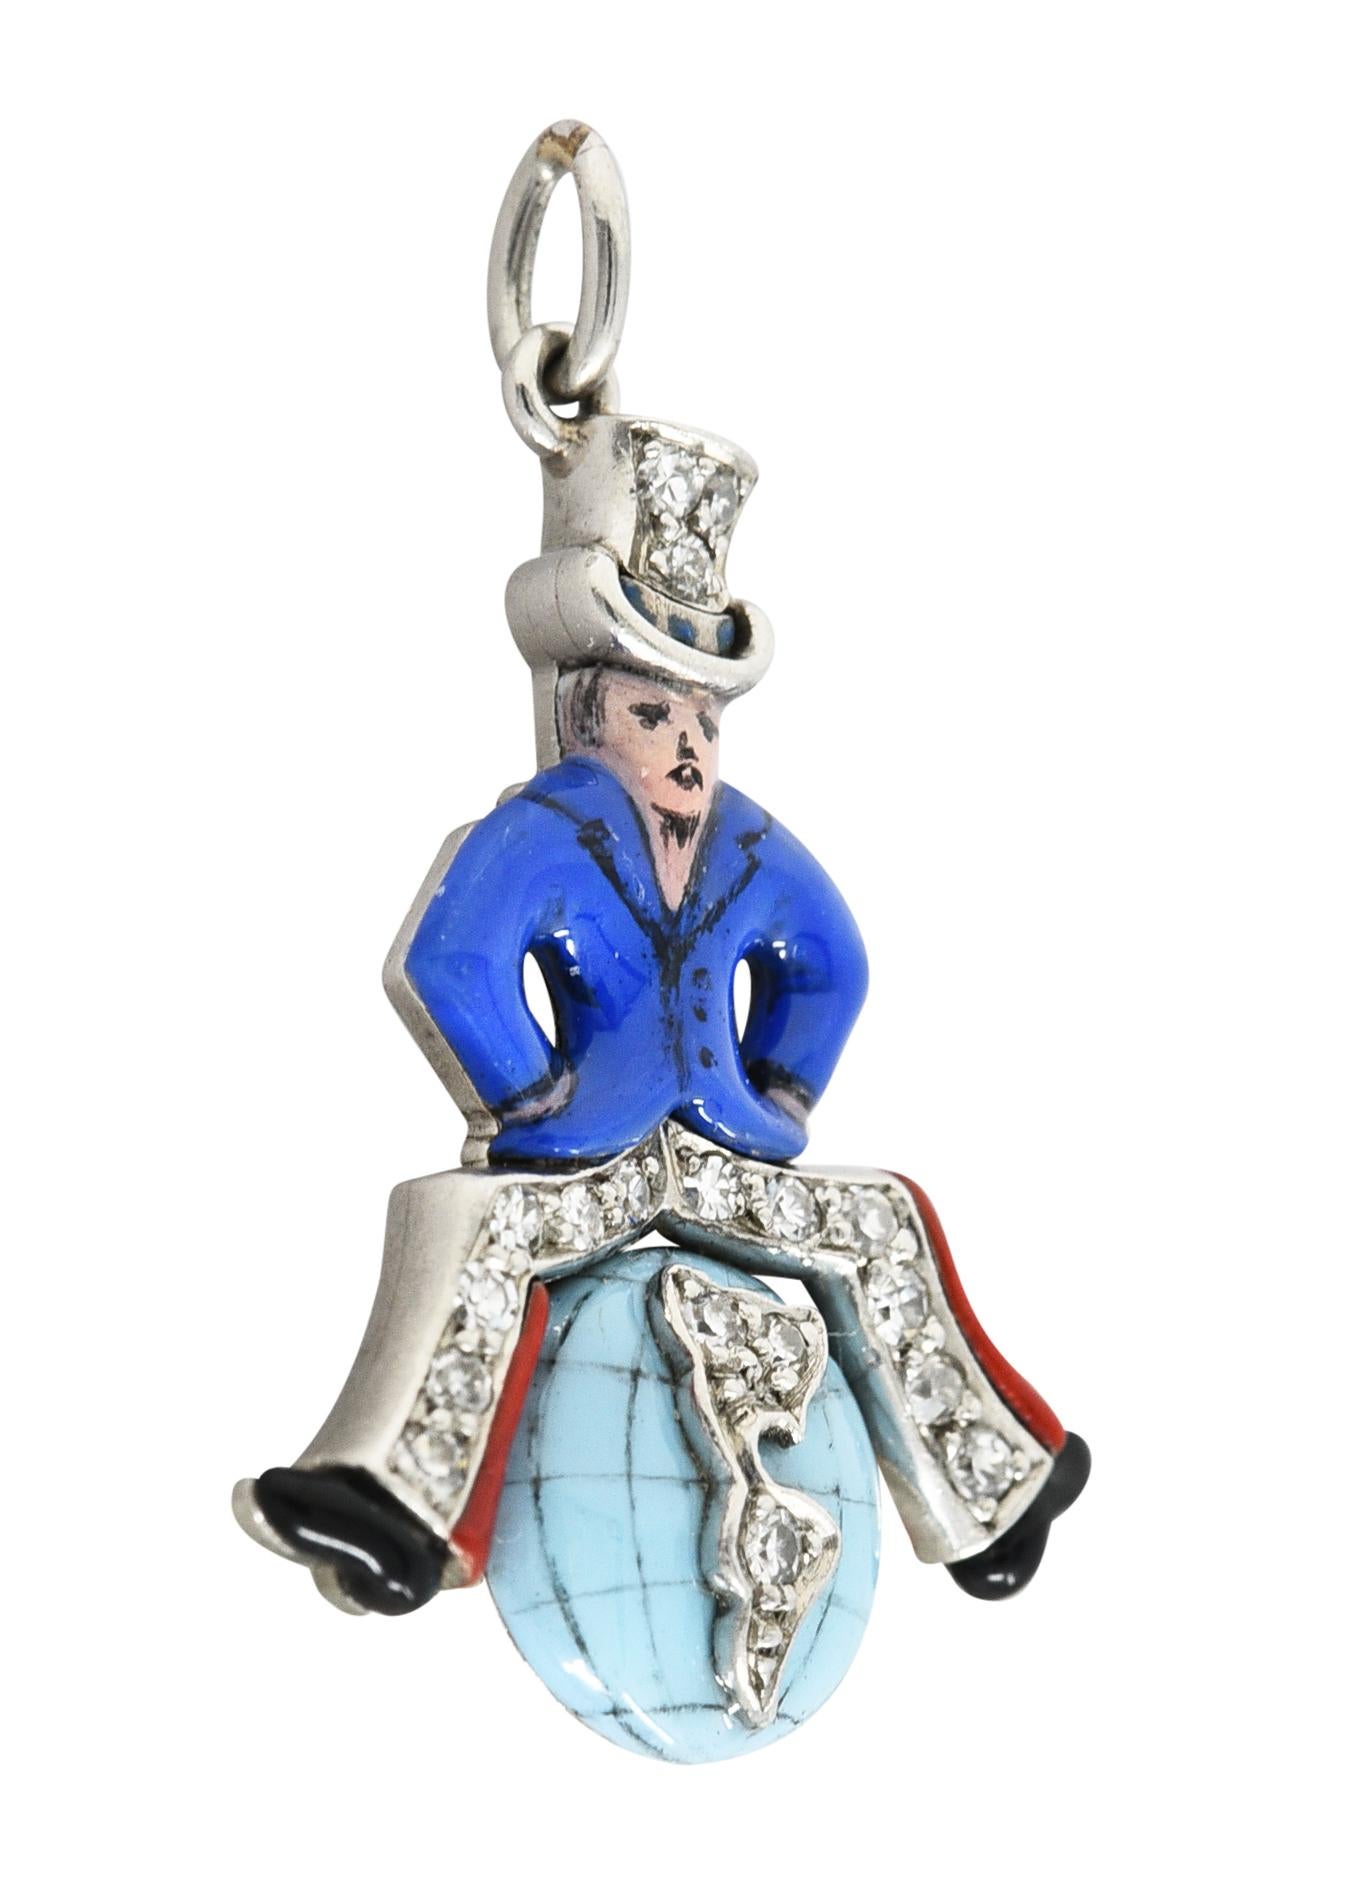 Le personnage de l'Oncle Sam est assis sur un globe terrestre centré sur l'Amérique du Nord et du Sud.

Portant un chapeau haut de forme, un pantalon évasé et un manteau bleu avec de l'émail partout.

Bleu royal, bleu pastel, rouge et noir opaques